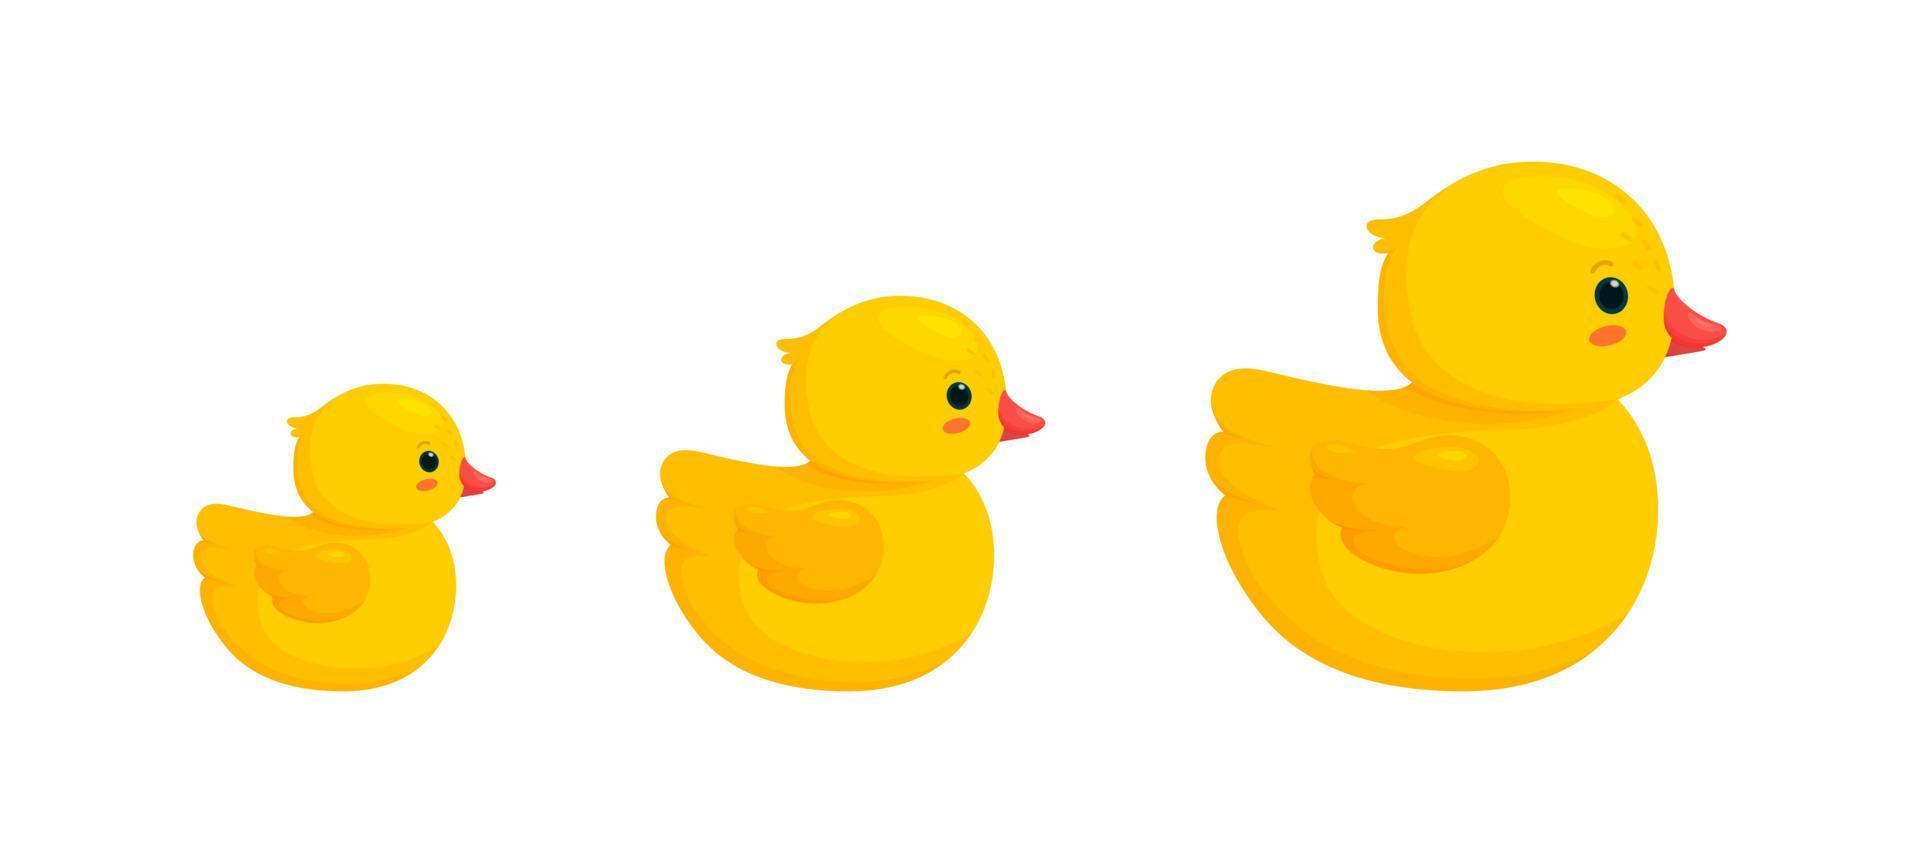 famille de canards en caoutchouc avec deux canetons isolés sur fond blanc. vue latérale des jouets en plastique jaune, des parents et des enfants. illustration vectorielle vecteur